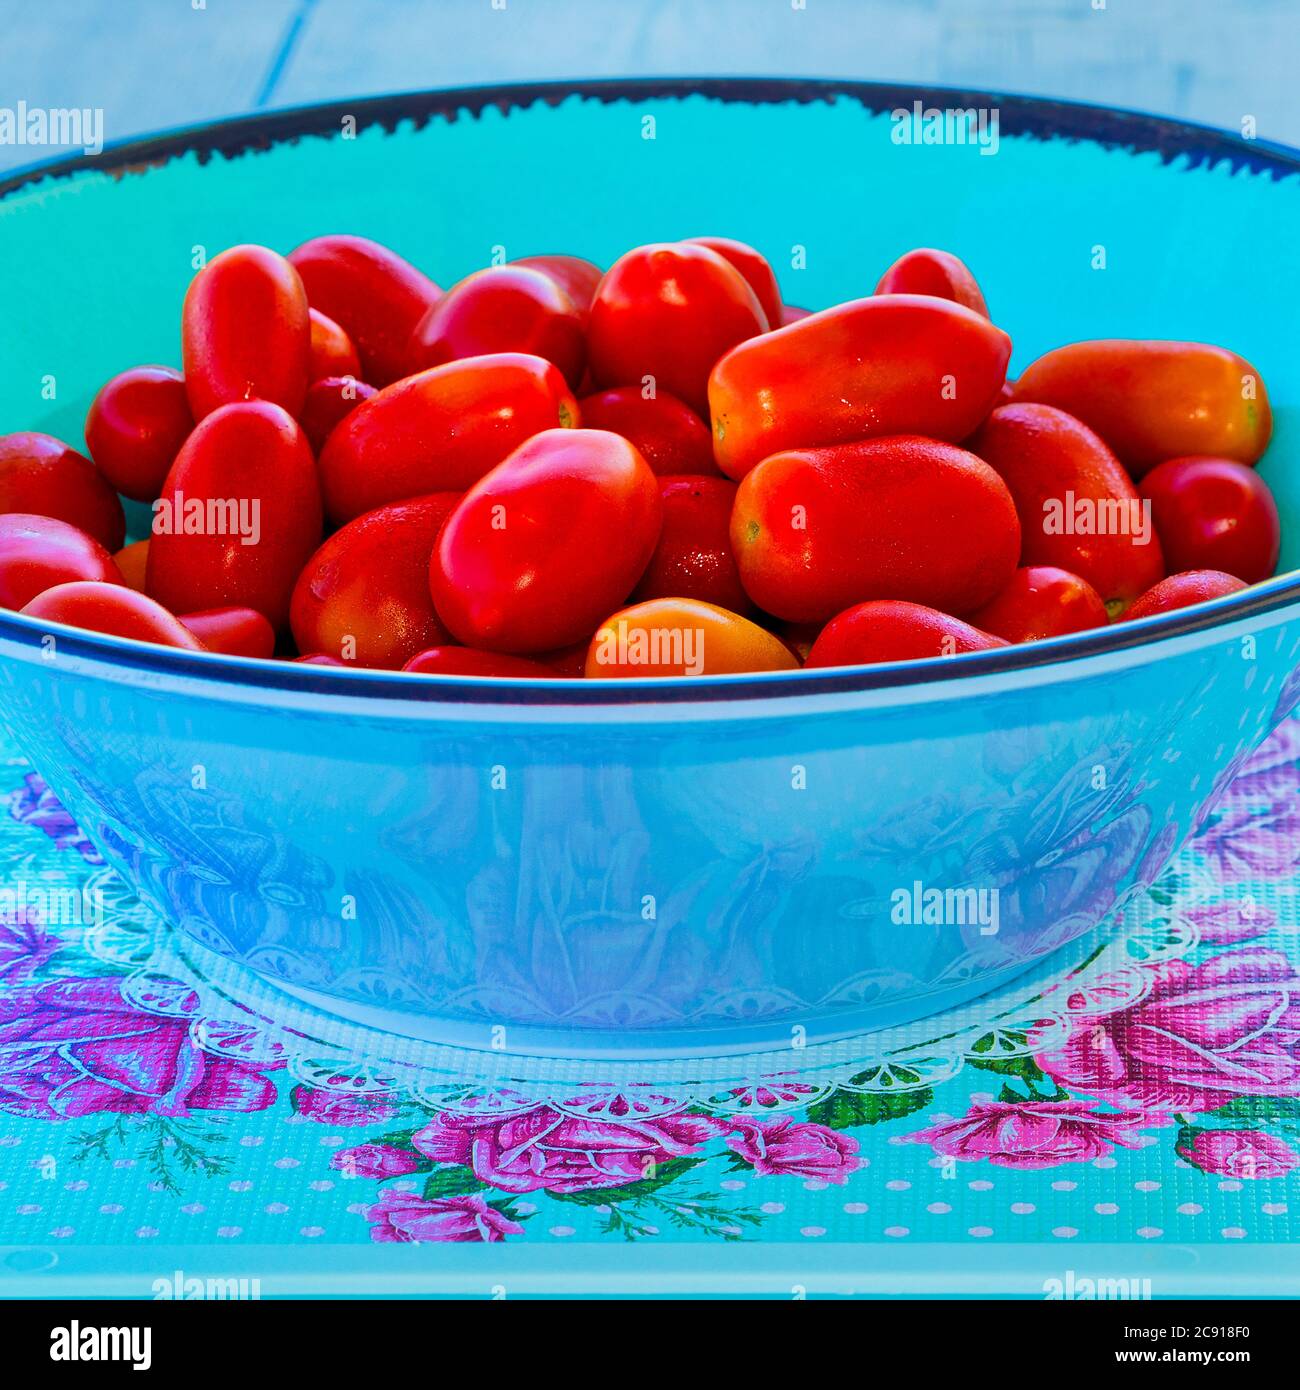 Kirschtomaten. Saftige rote Kirschtomaten in einer türkisfarbenen Salatschüssel. Makroaufnahme. Stockbild Stockfoto